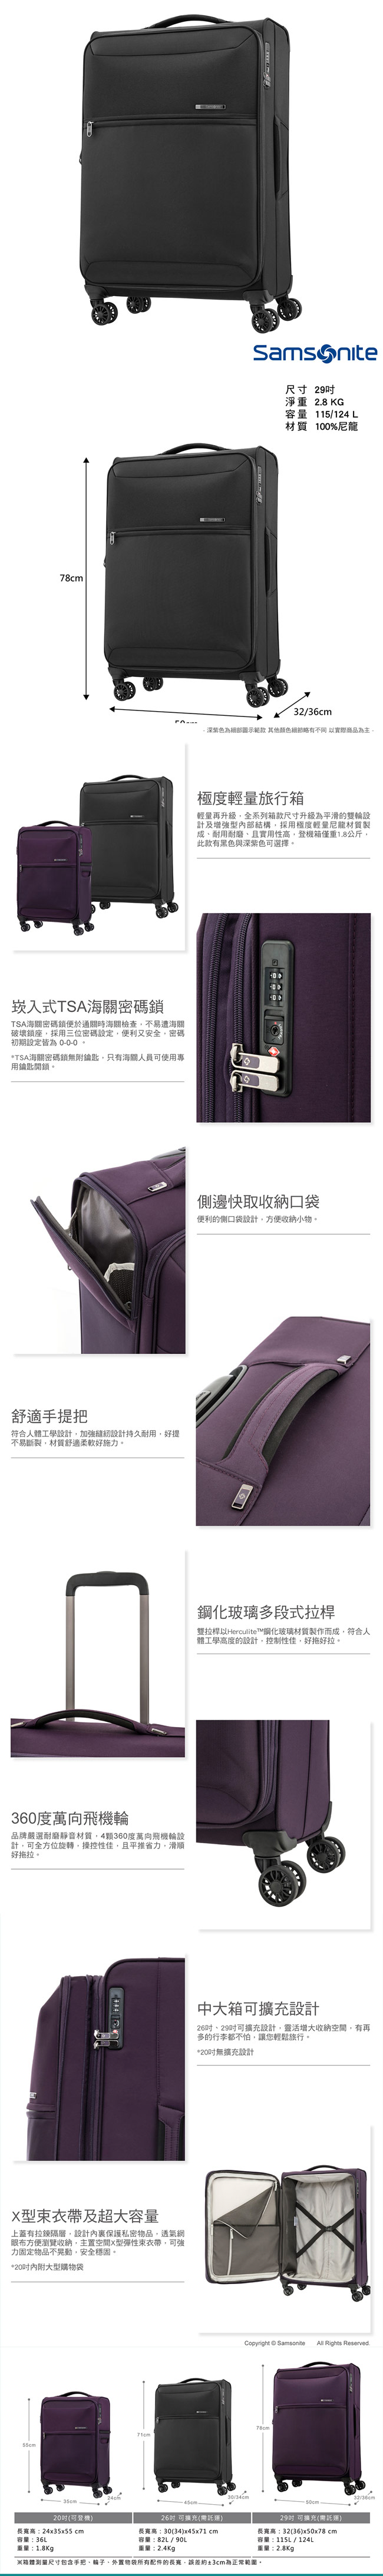 Samsonite新秀麗 29吋72H DLX 飛機輪TSA極輕量布面行李箱(黑)